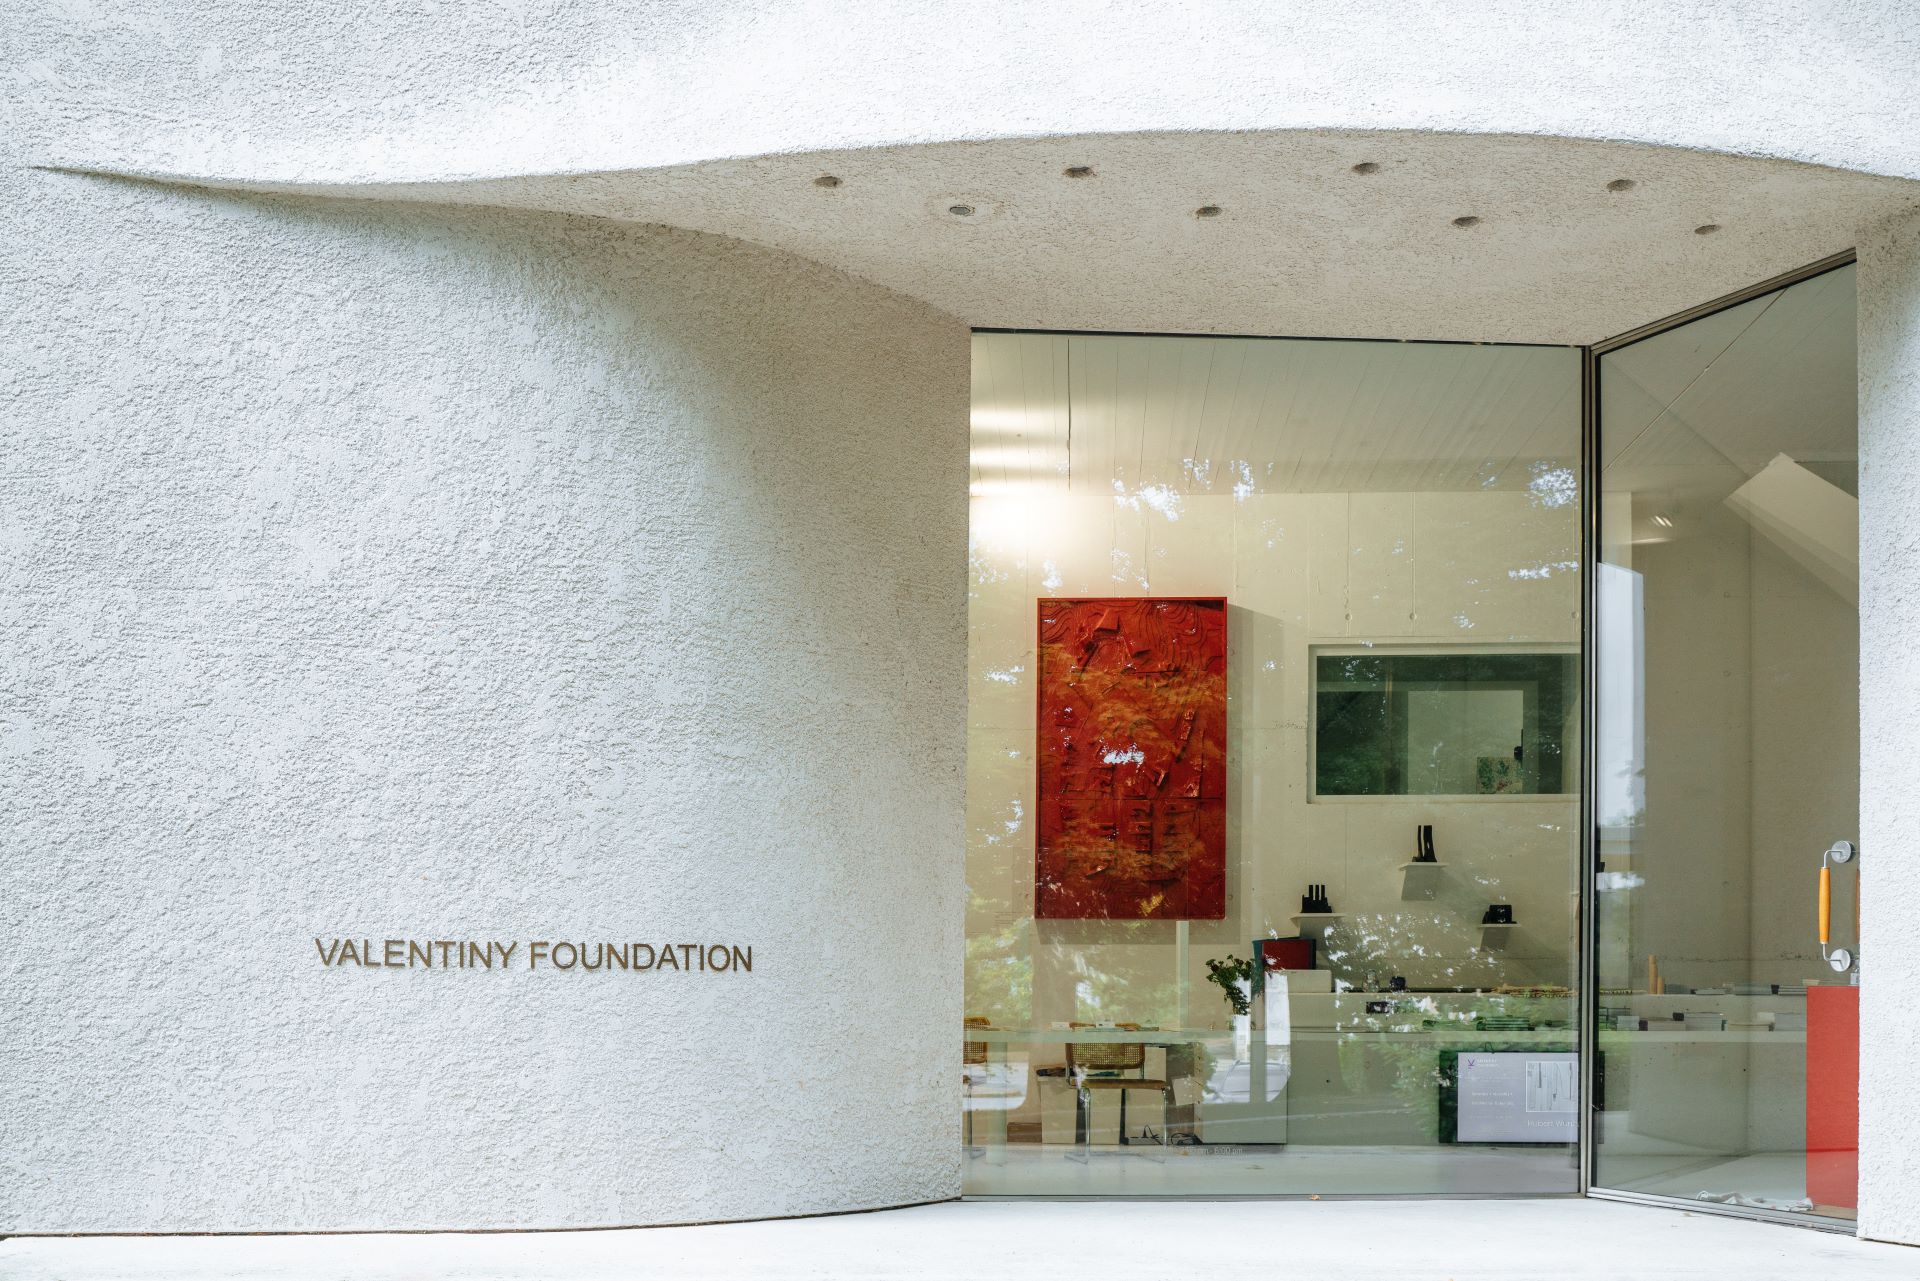 Das Gebäude der Stiftung Valentiny ist vom Vordereingang aus abgebildet. Das Gebäude ist weiß und strukturiert.